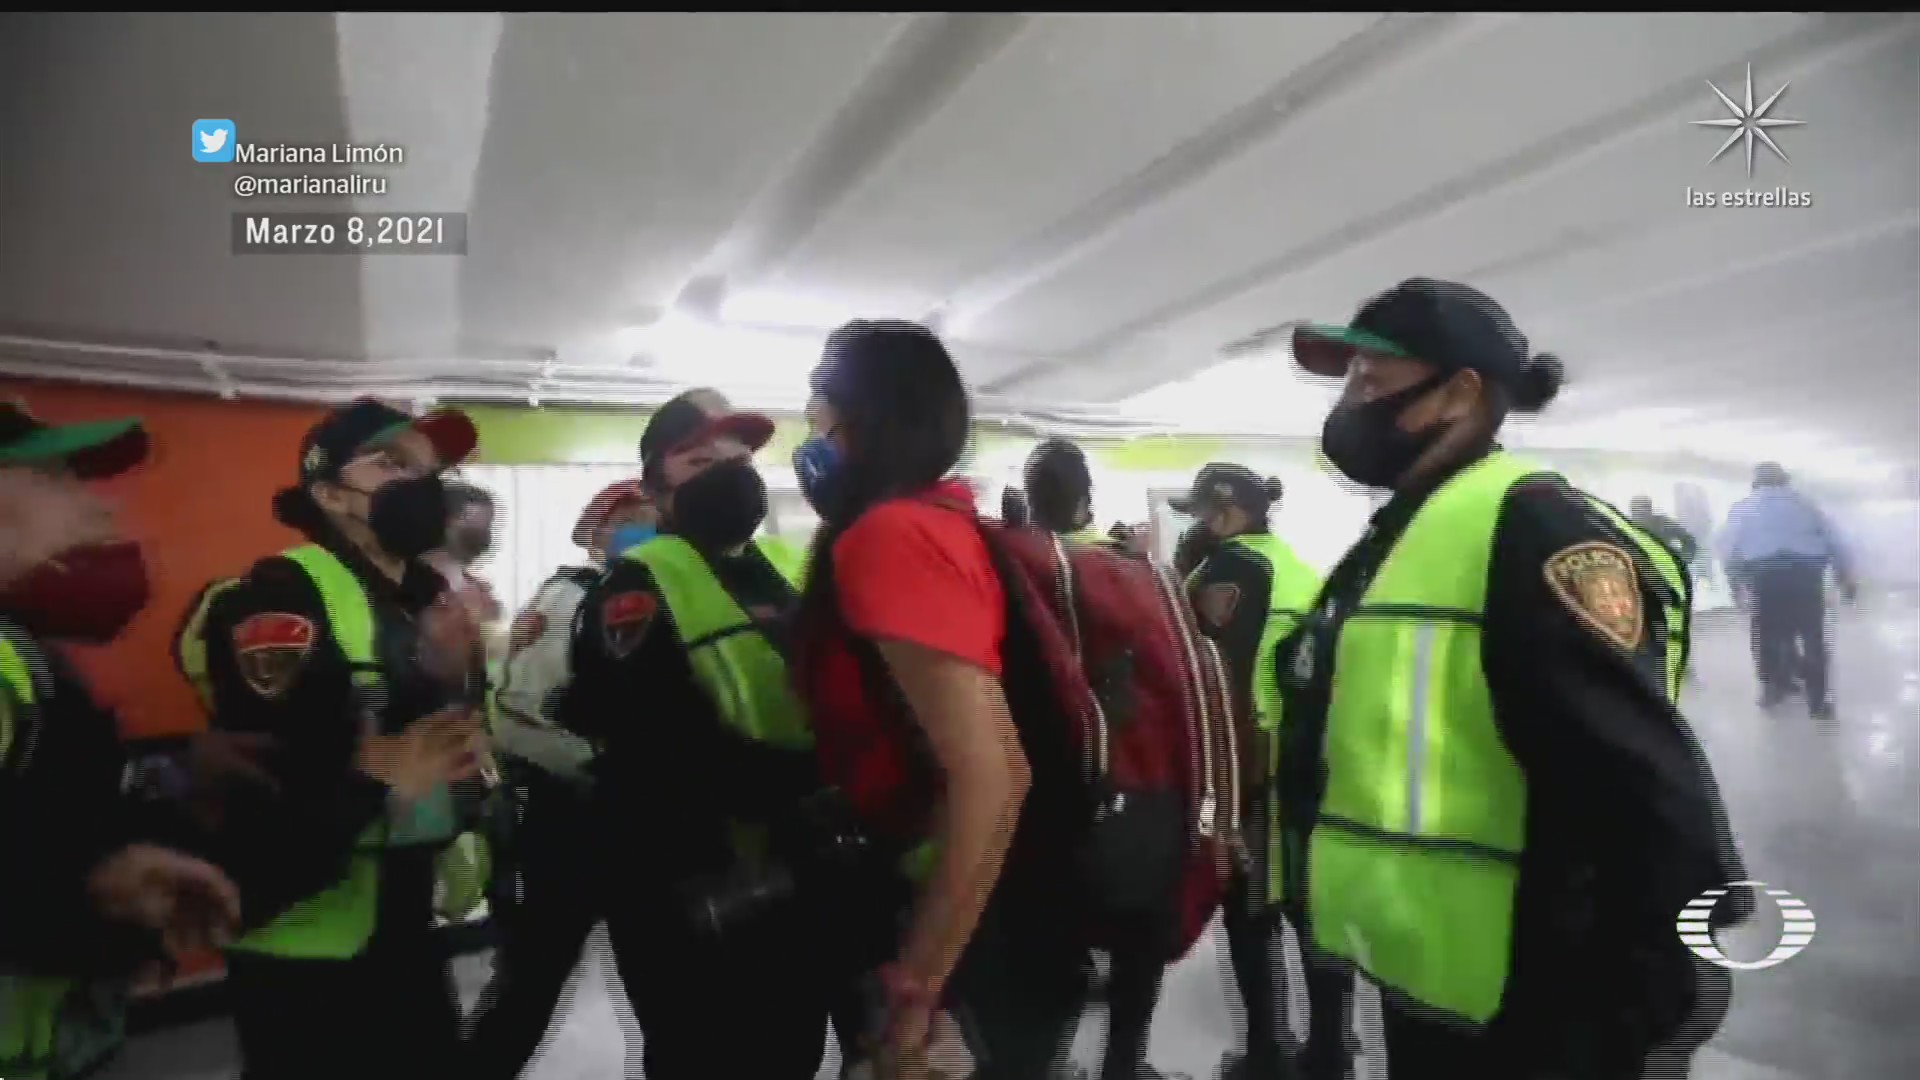 policias no aplicaron protocolos de actuacion durante marcha 8m dicen activistas